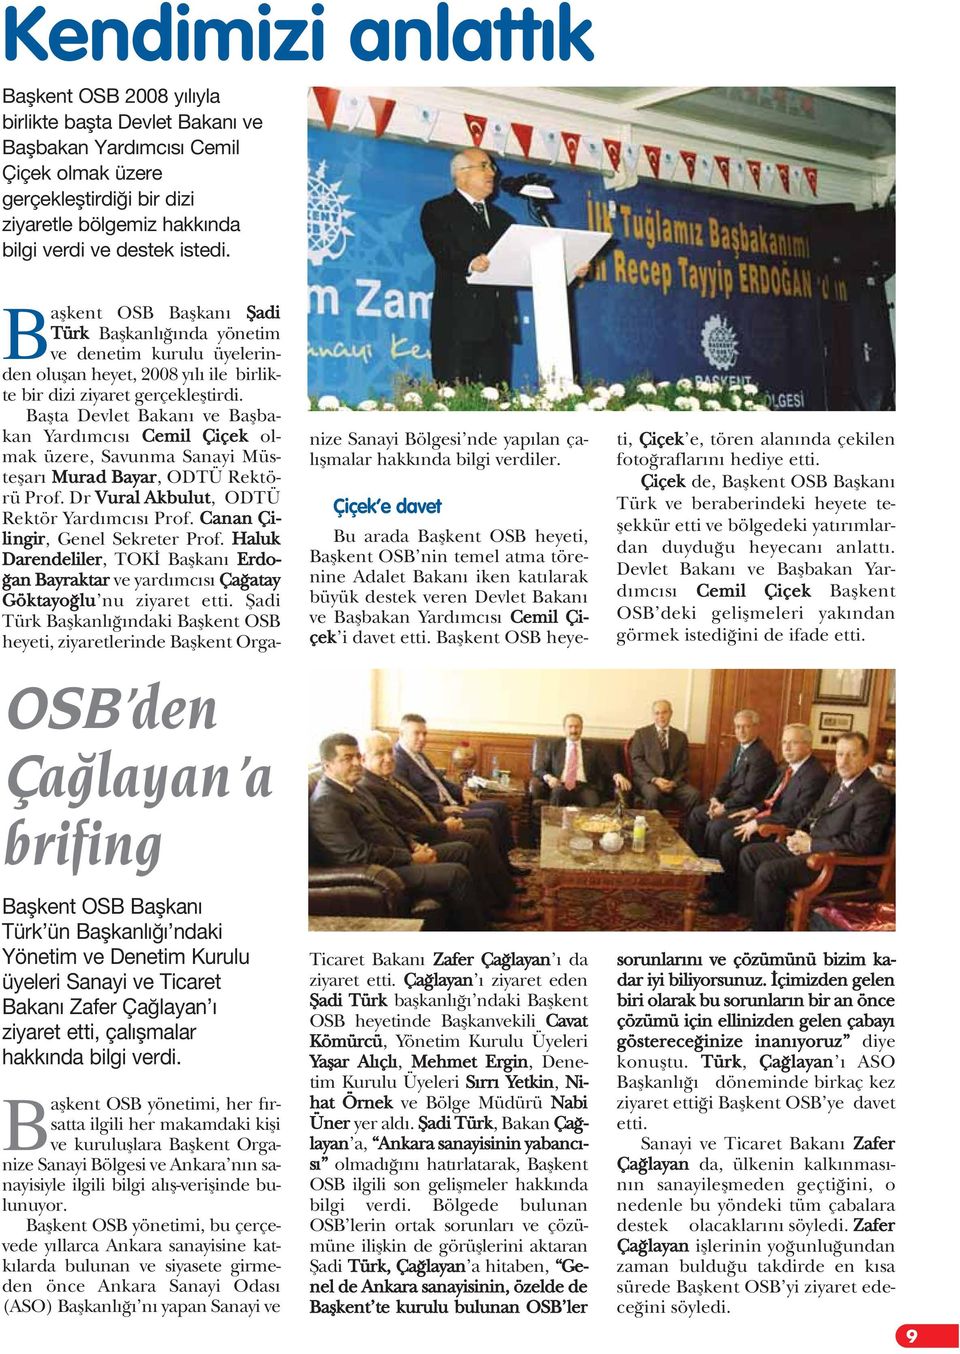 Baflkent OSB yönetimi, her f rsatta ilgili her makamdaki kifli ve kurulufllara Baflkent Organize Sanayi Bölgesi ve Ankara n n sanayisiyle ilgili bilgi al fl-veriflinde bulunuyor.